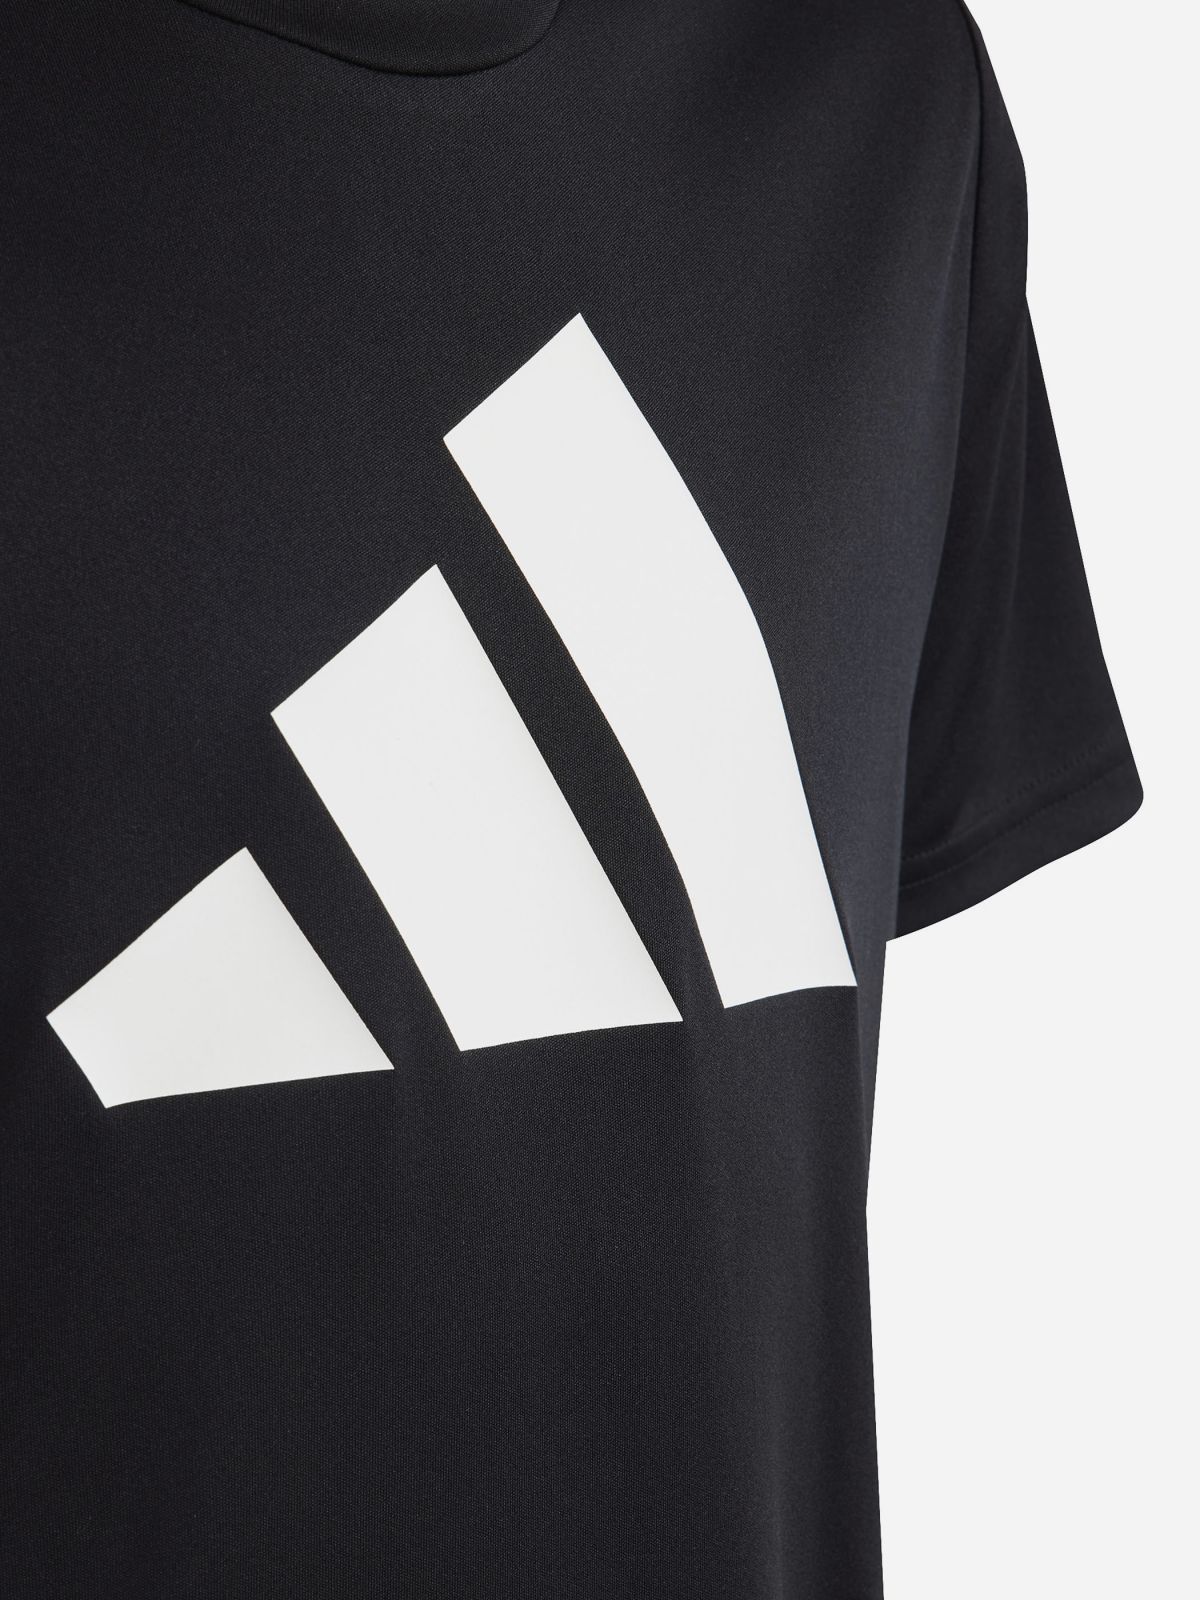  חולצת אימון עם הדפס לוגו / יוניסקס של ADIDAS Performance